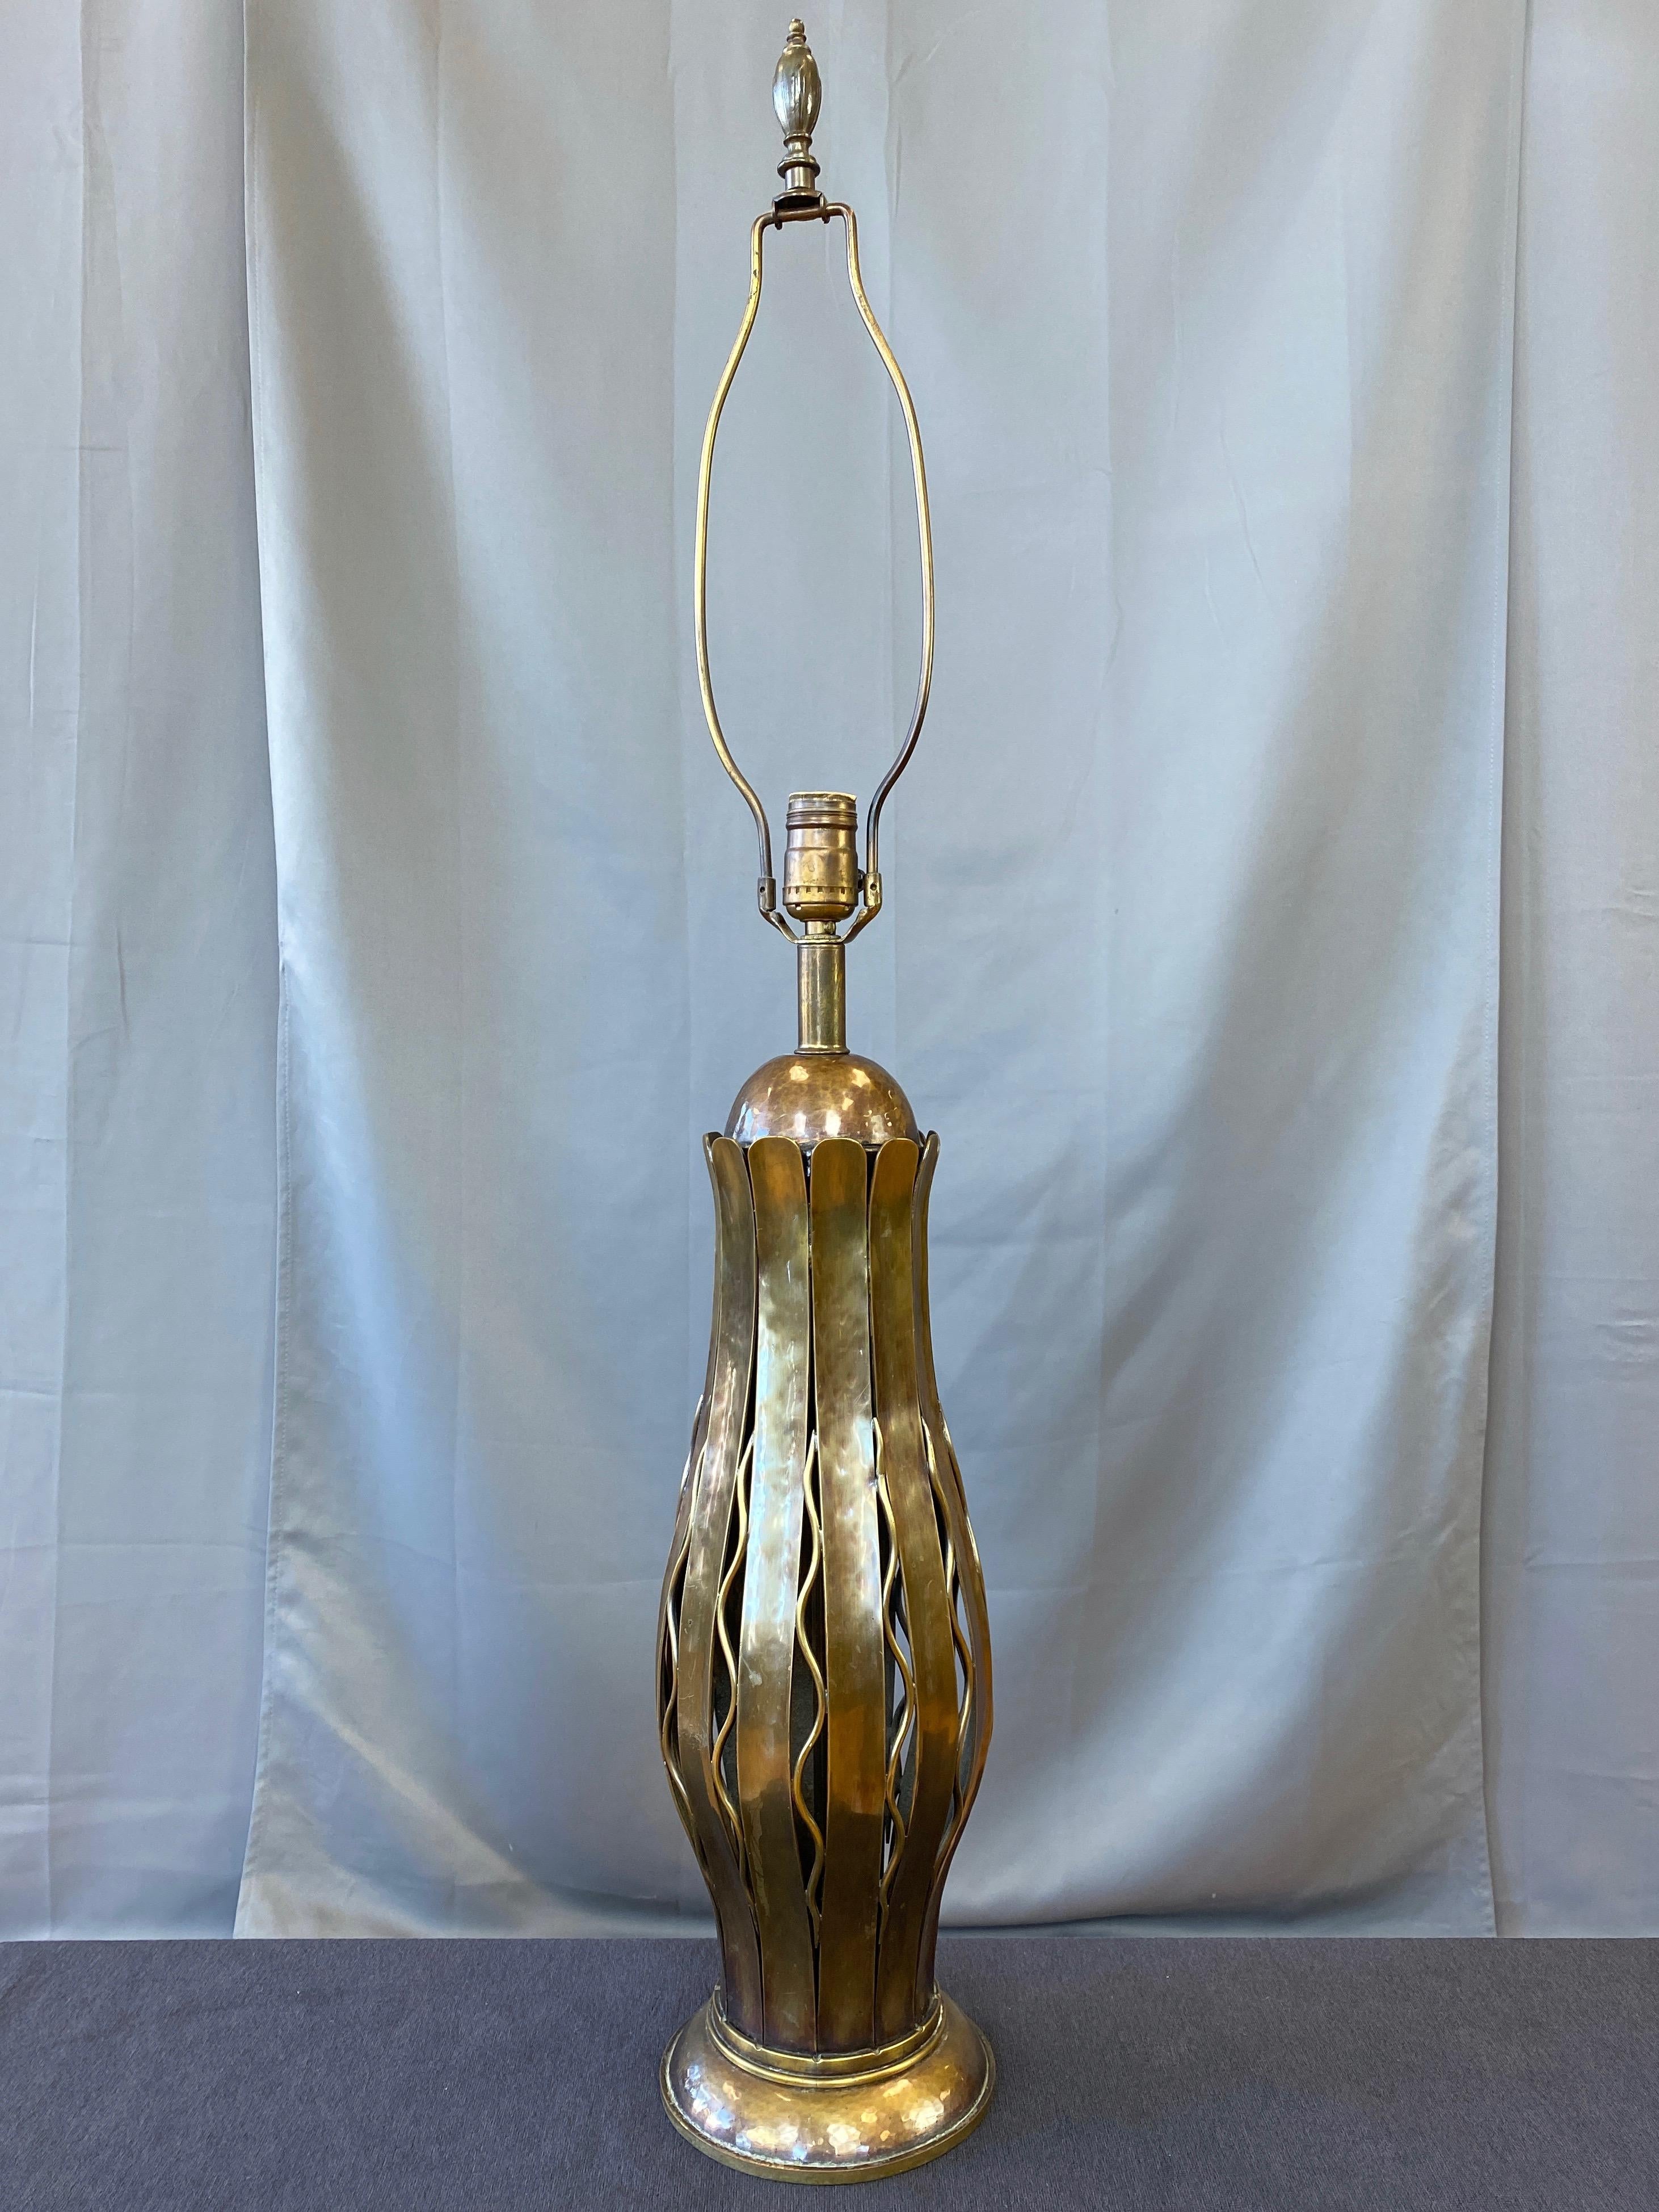 Lampe de table haute en cuivre et laiton martelé, très rare, datant des années 1950, fabriquée exclusivement par Hans Grag pour Gump's de San Francisco.

Le capuchon en demi-dôme en cuivre habilement formé et martelé à la main et les douves en